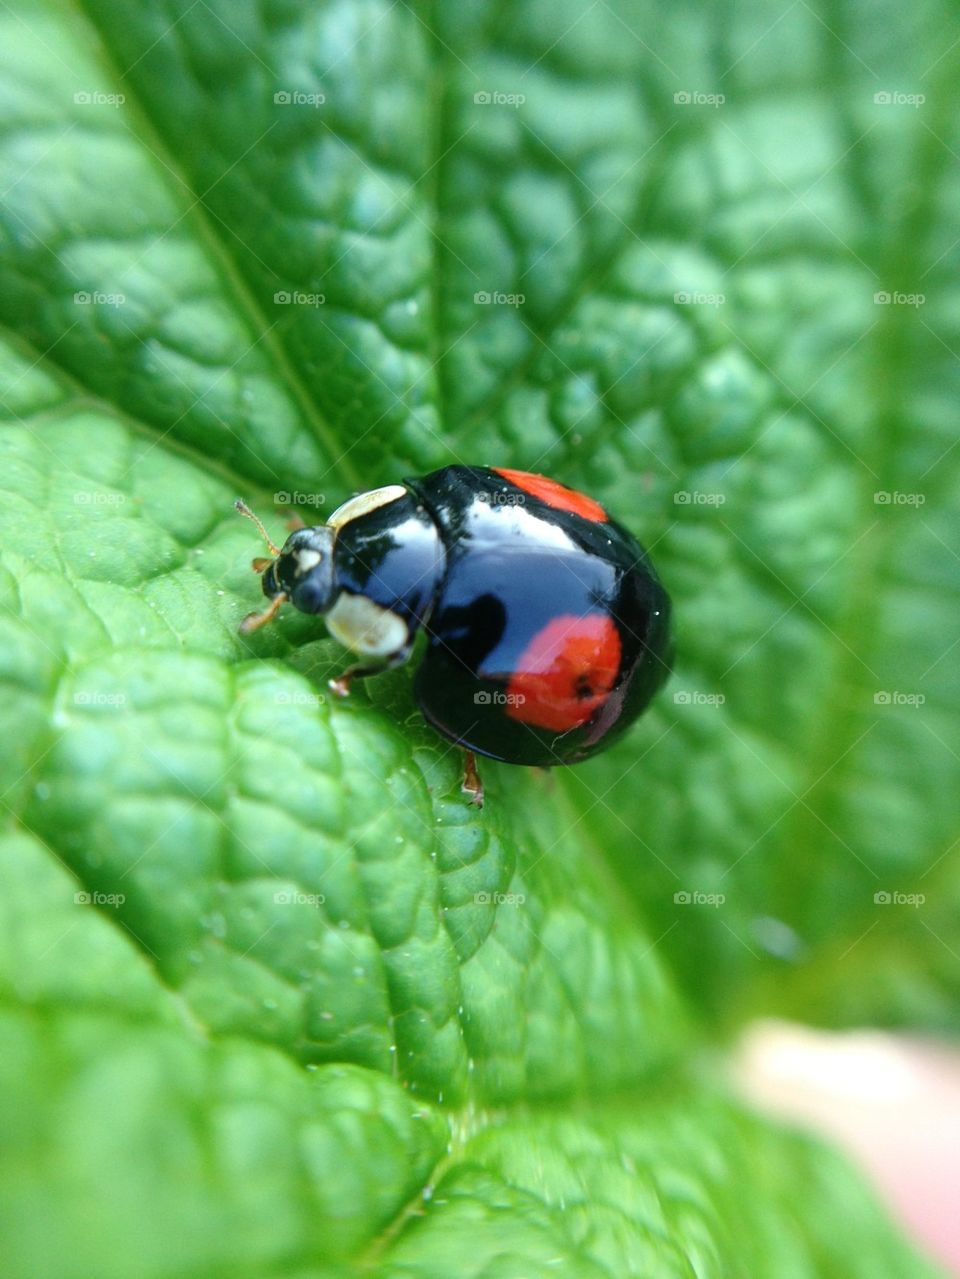 Black lady bug on green leaf